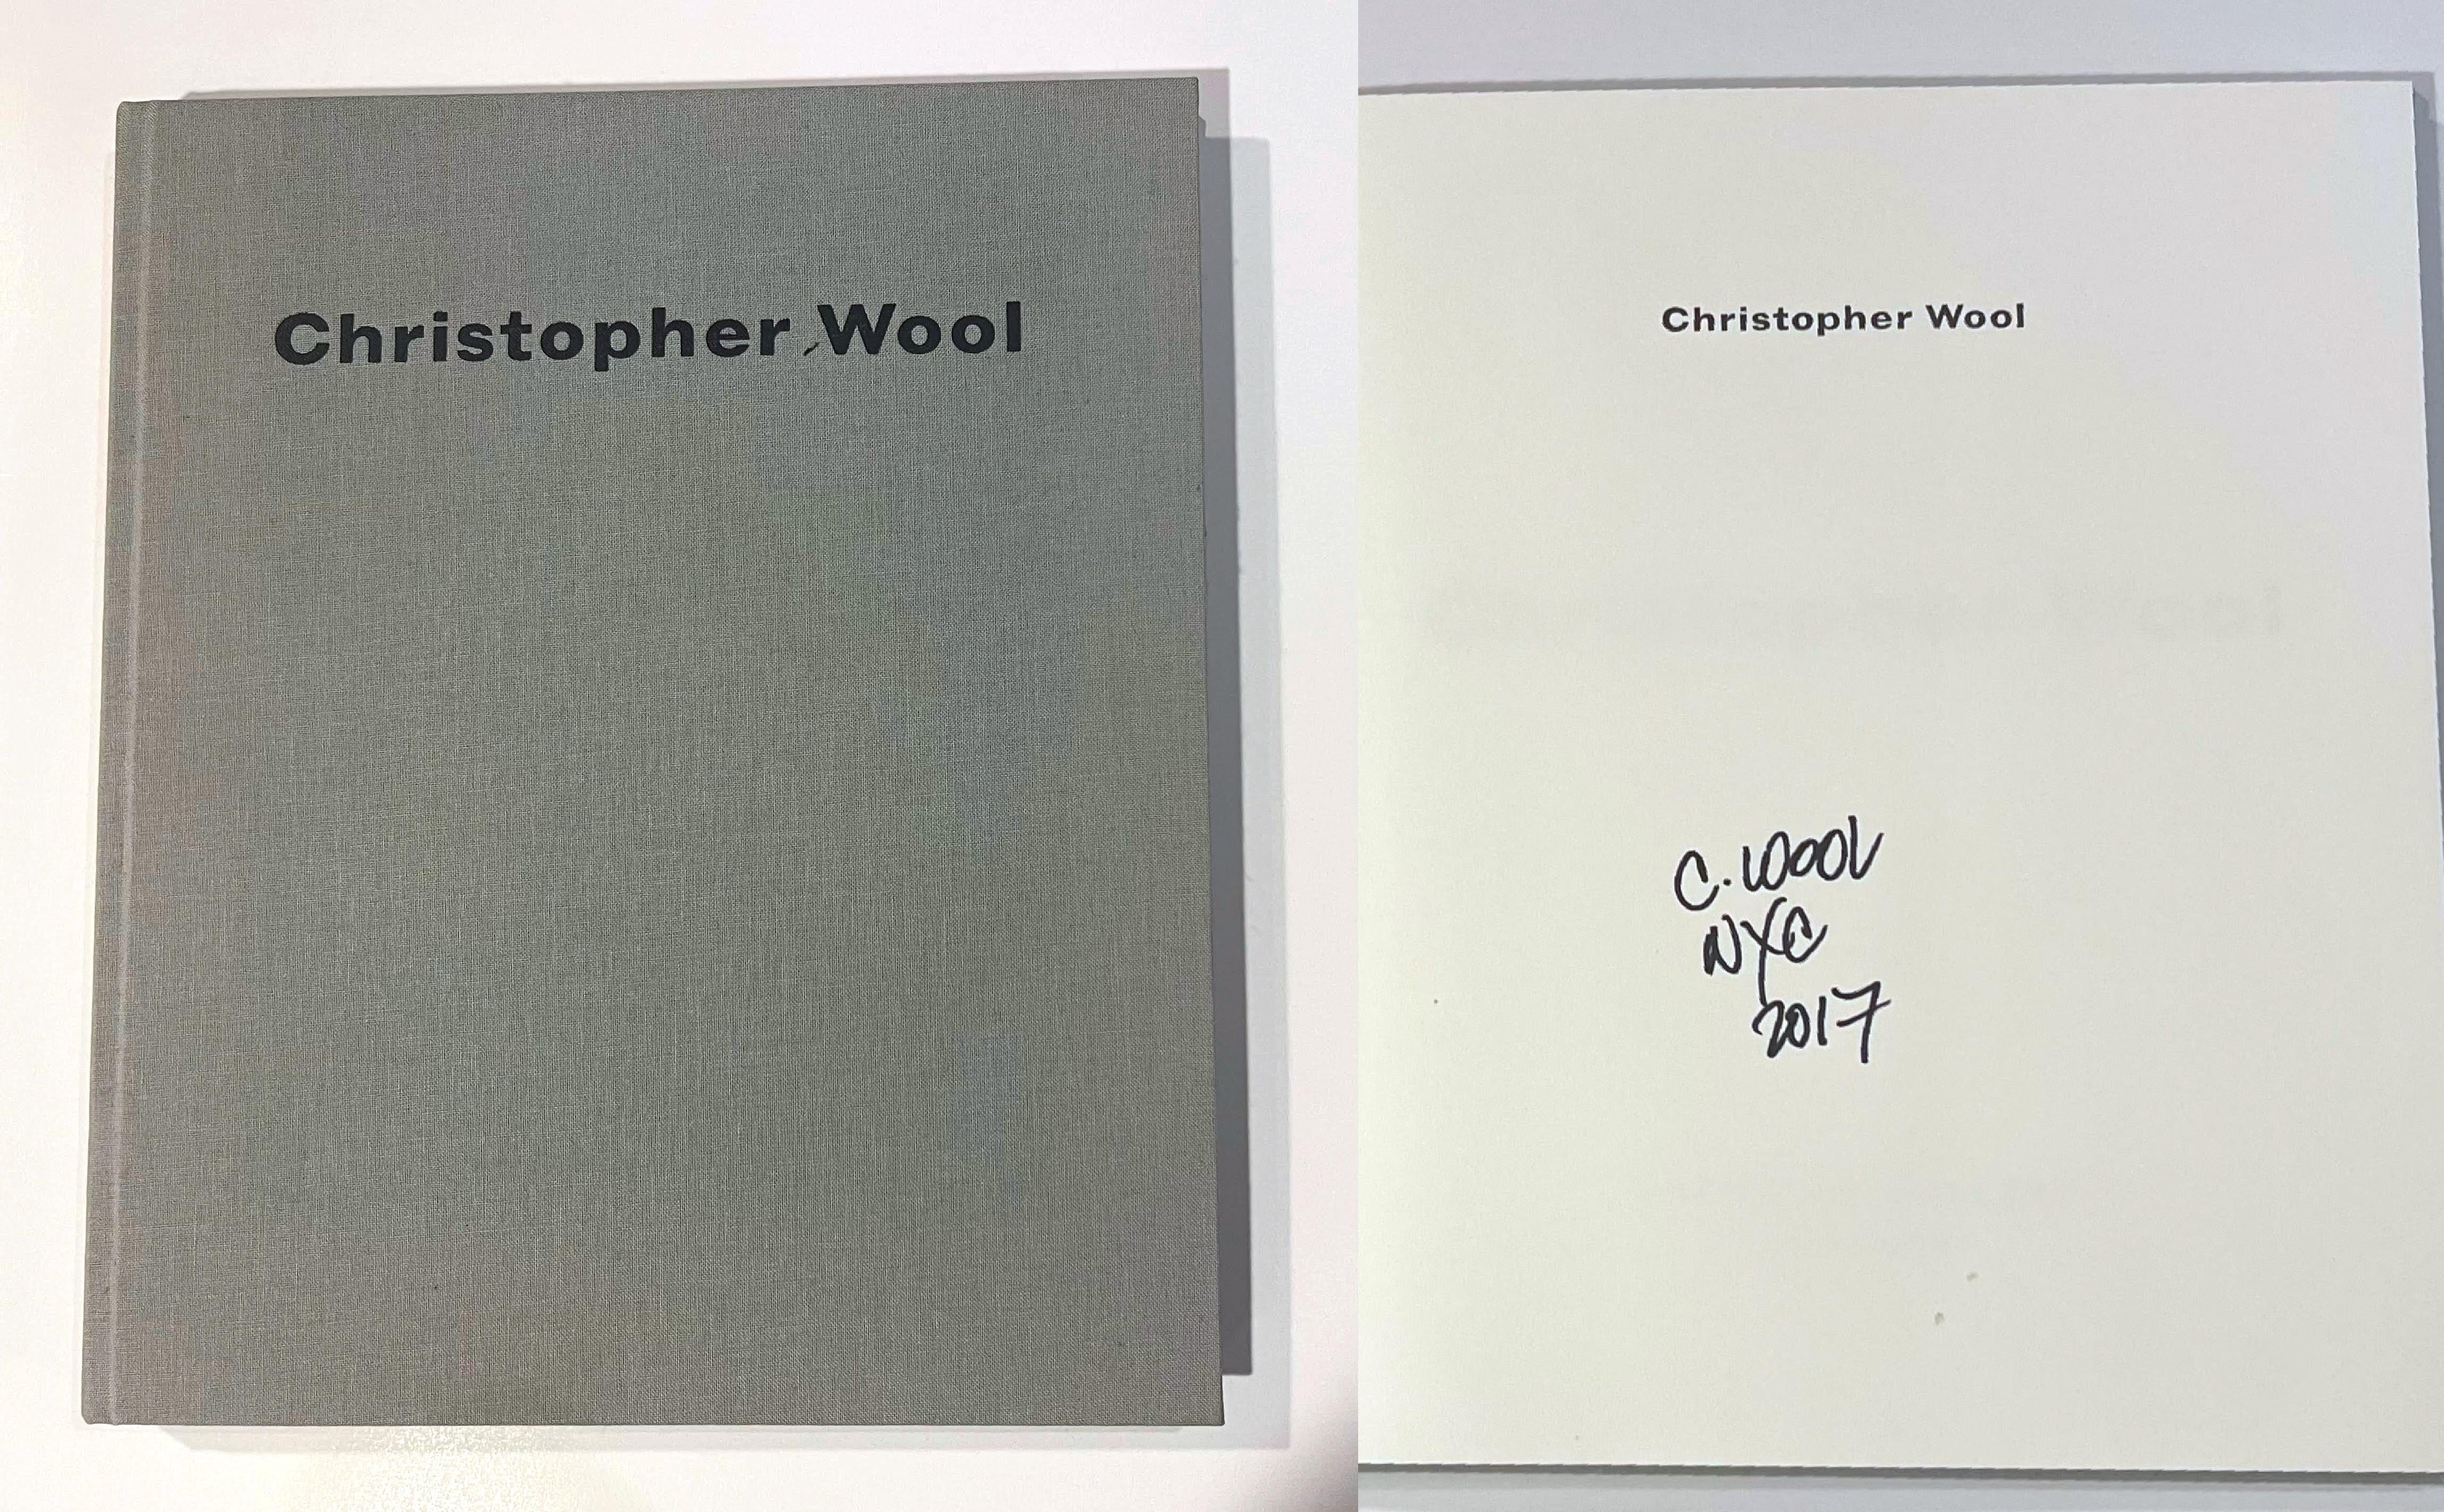 Christopher Wool (handsigniert und datiert), 2006
Gebundene Monografie (handsigniert und datiert von Christopher Wool)
Handsigniert und datiert 2017 von Christopher Wool auf dem Halbtitelblatt
12 1/4 × 10 1/4 × 3/4 Zoll
Diese elegante gebundene